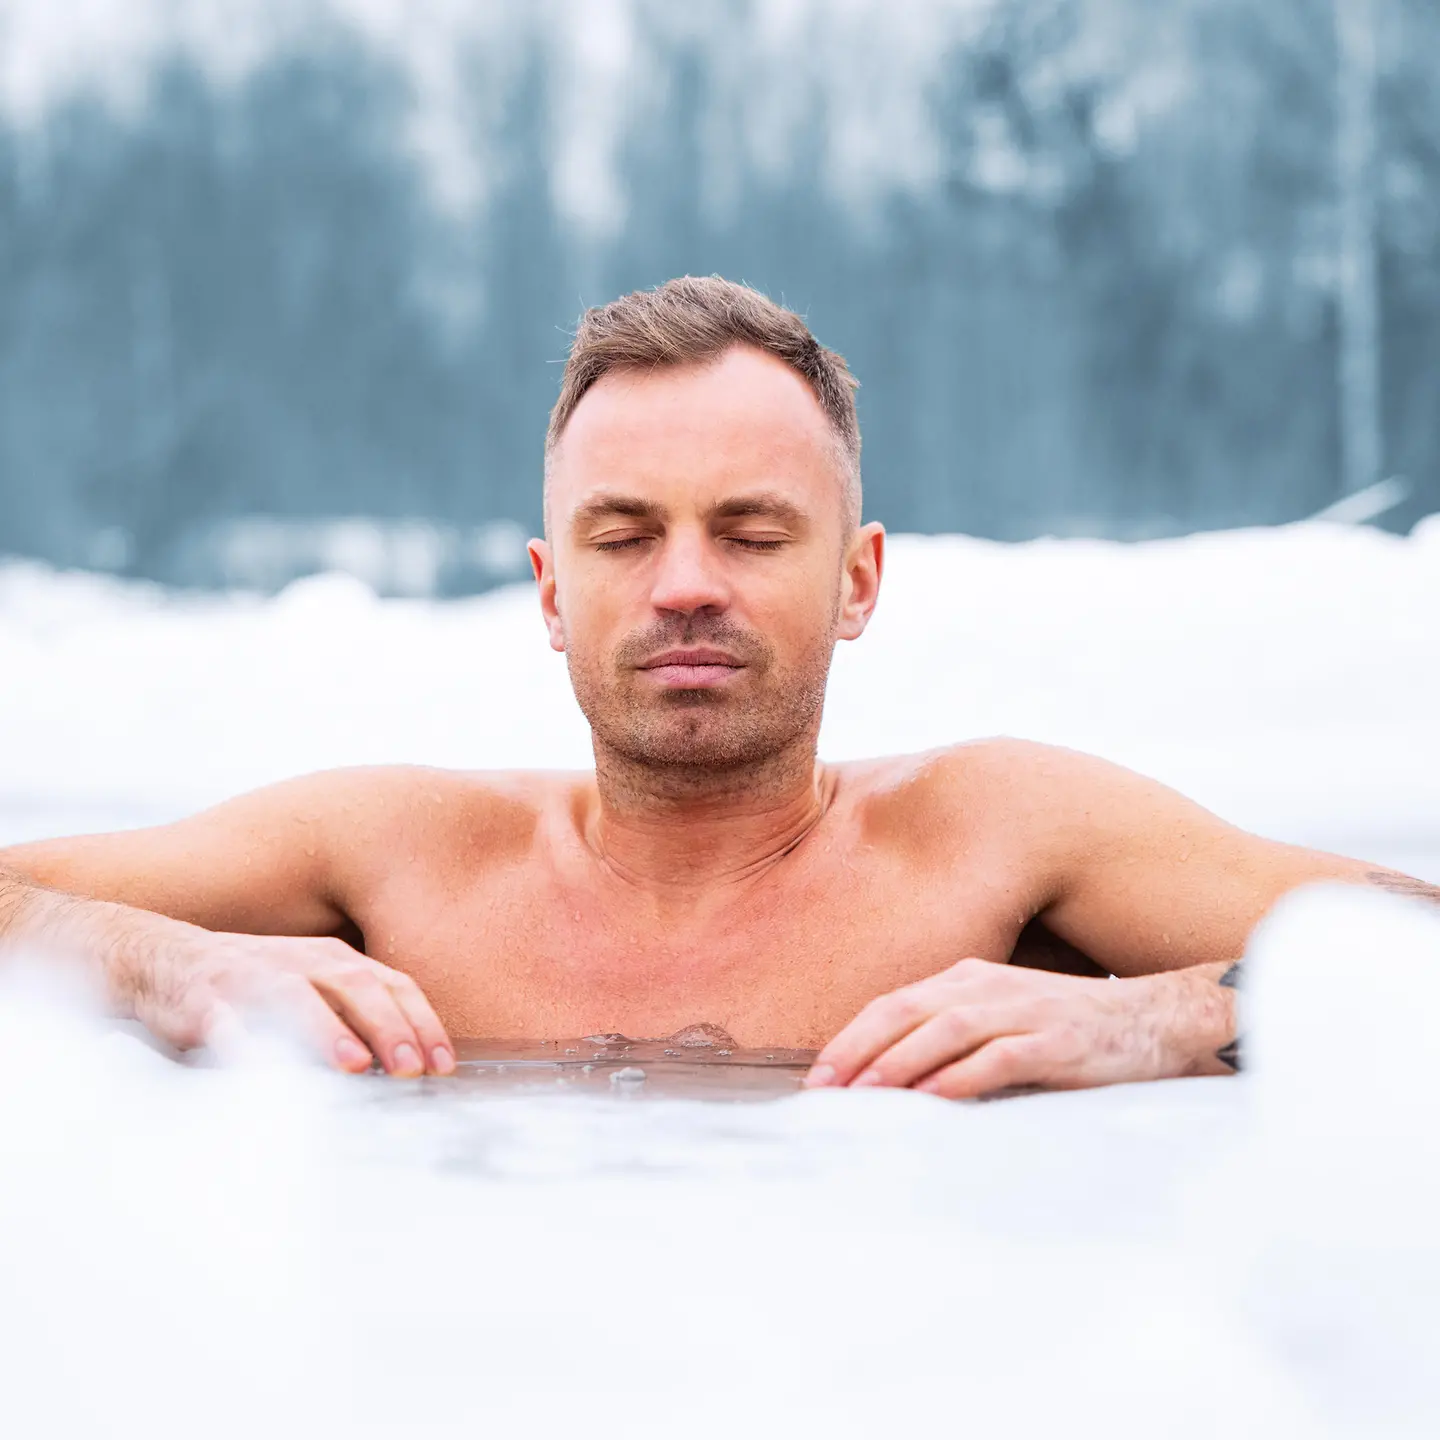 Das Bild zeigt einen Mann beim Eisbaden.